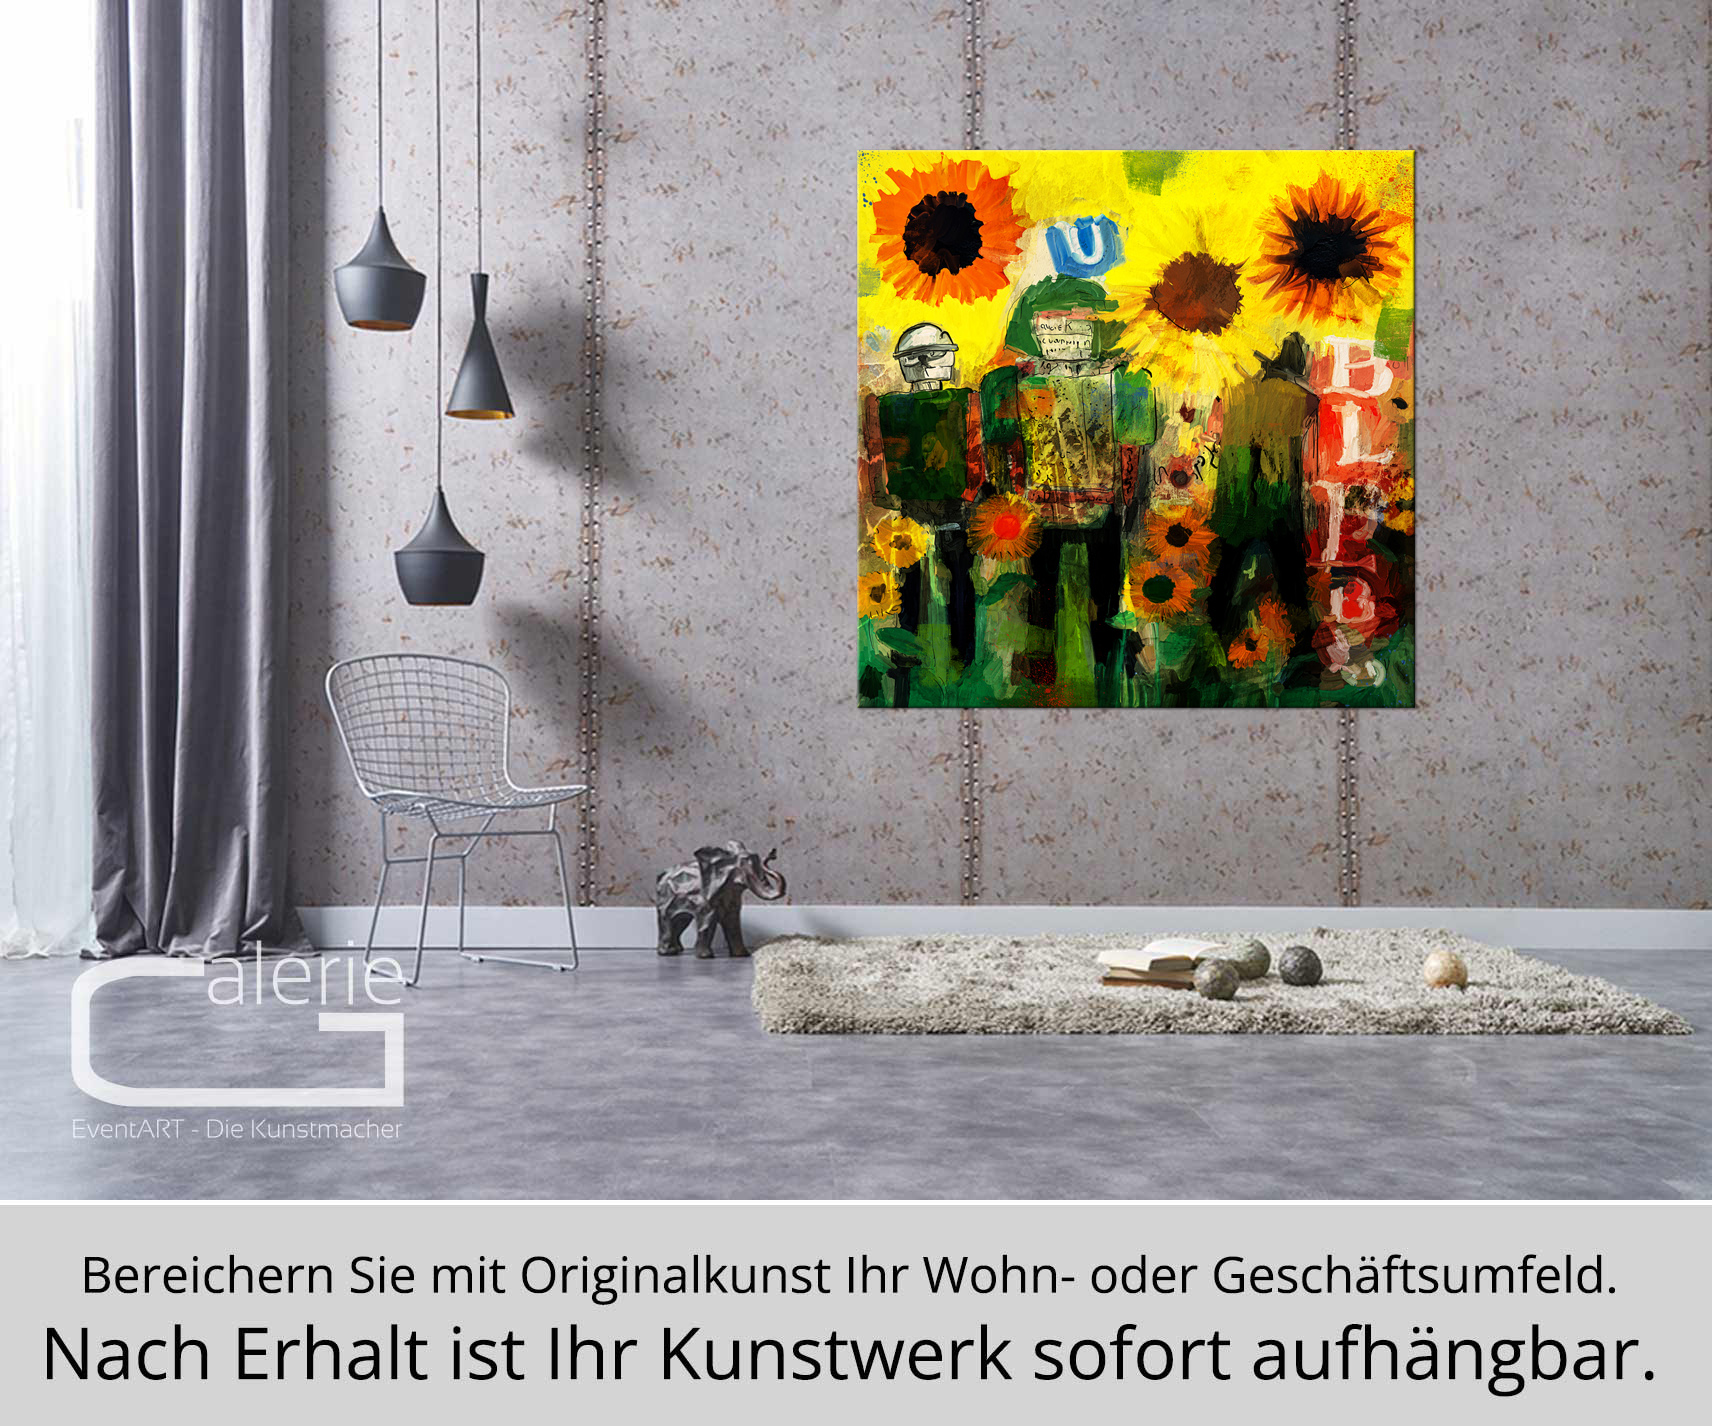 Moderne Pop Art: Sonnenblumen mit Soldaten, H. Mühlbauer-Gardemin, Original (serielles Unikat)